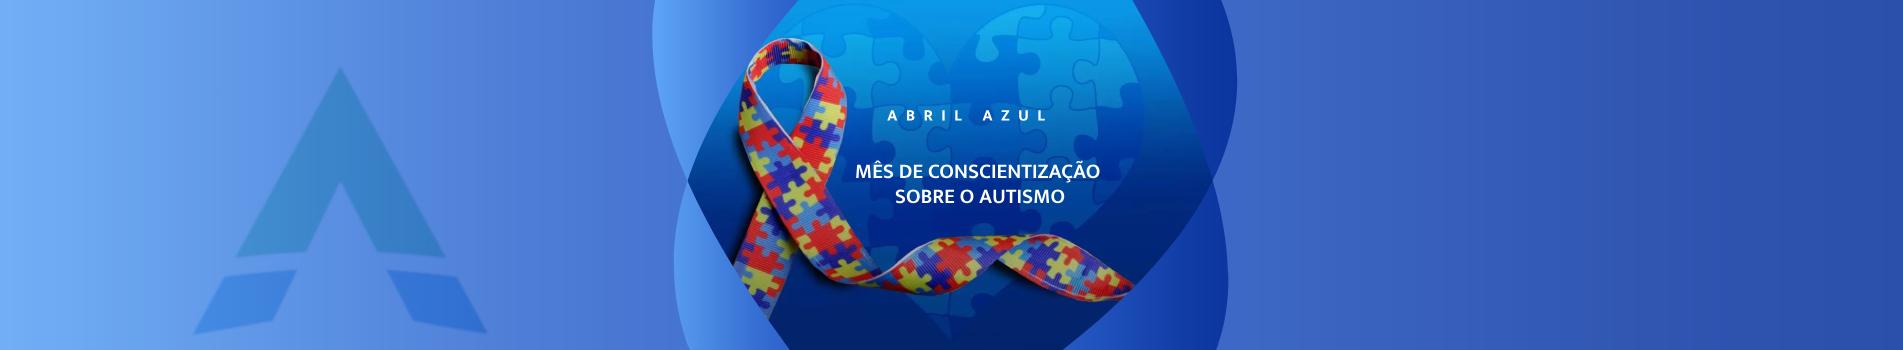 Banner_Conscientização_ao_Autismo